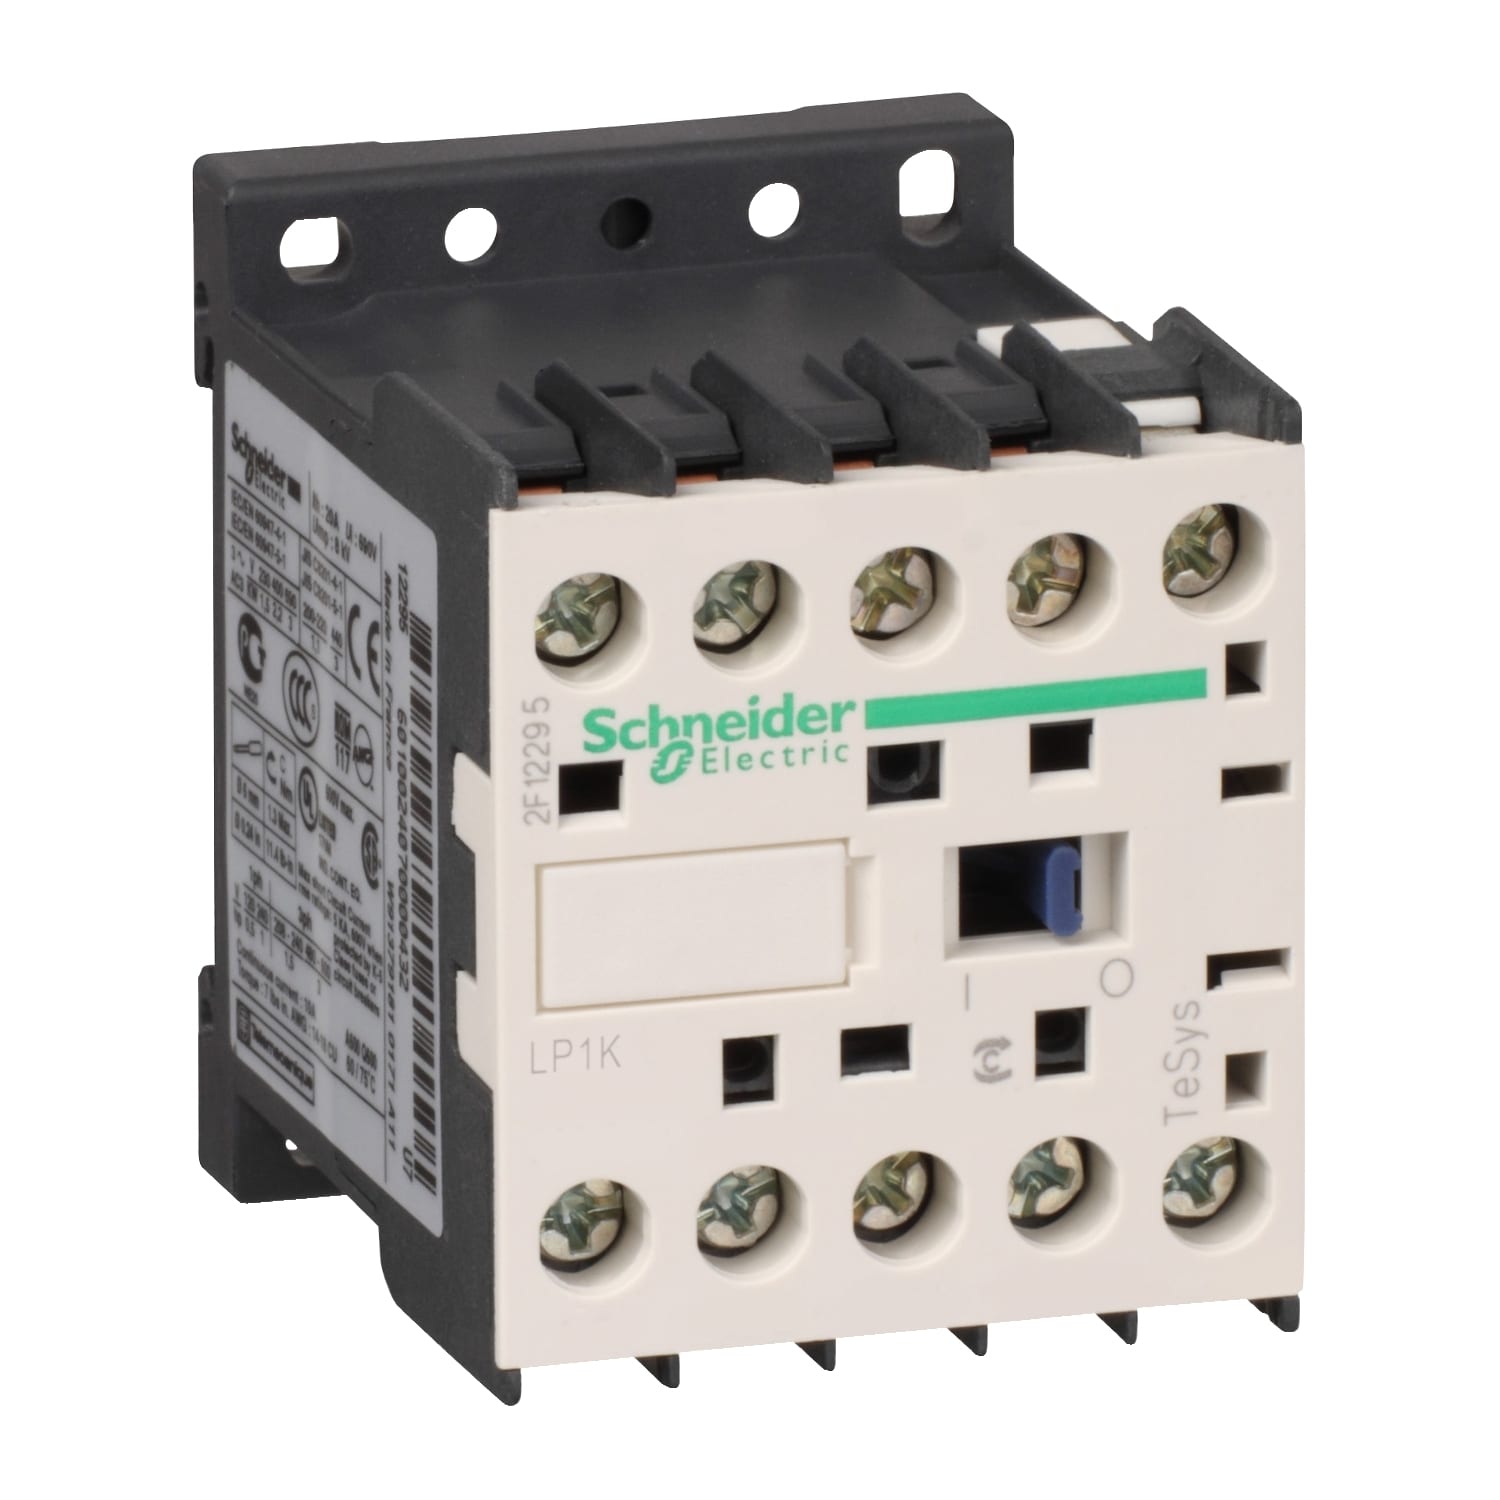 Schneider Electric - TeSys LP1K - contacteur - 3P - AC-3 440V - 12A - bobine 12Vcc